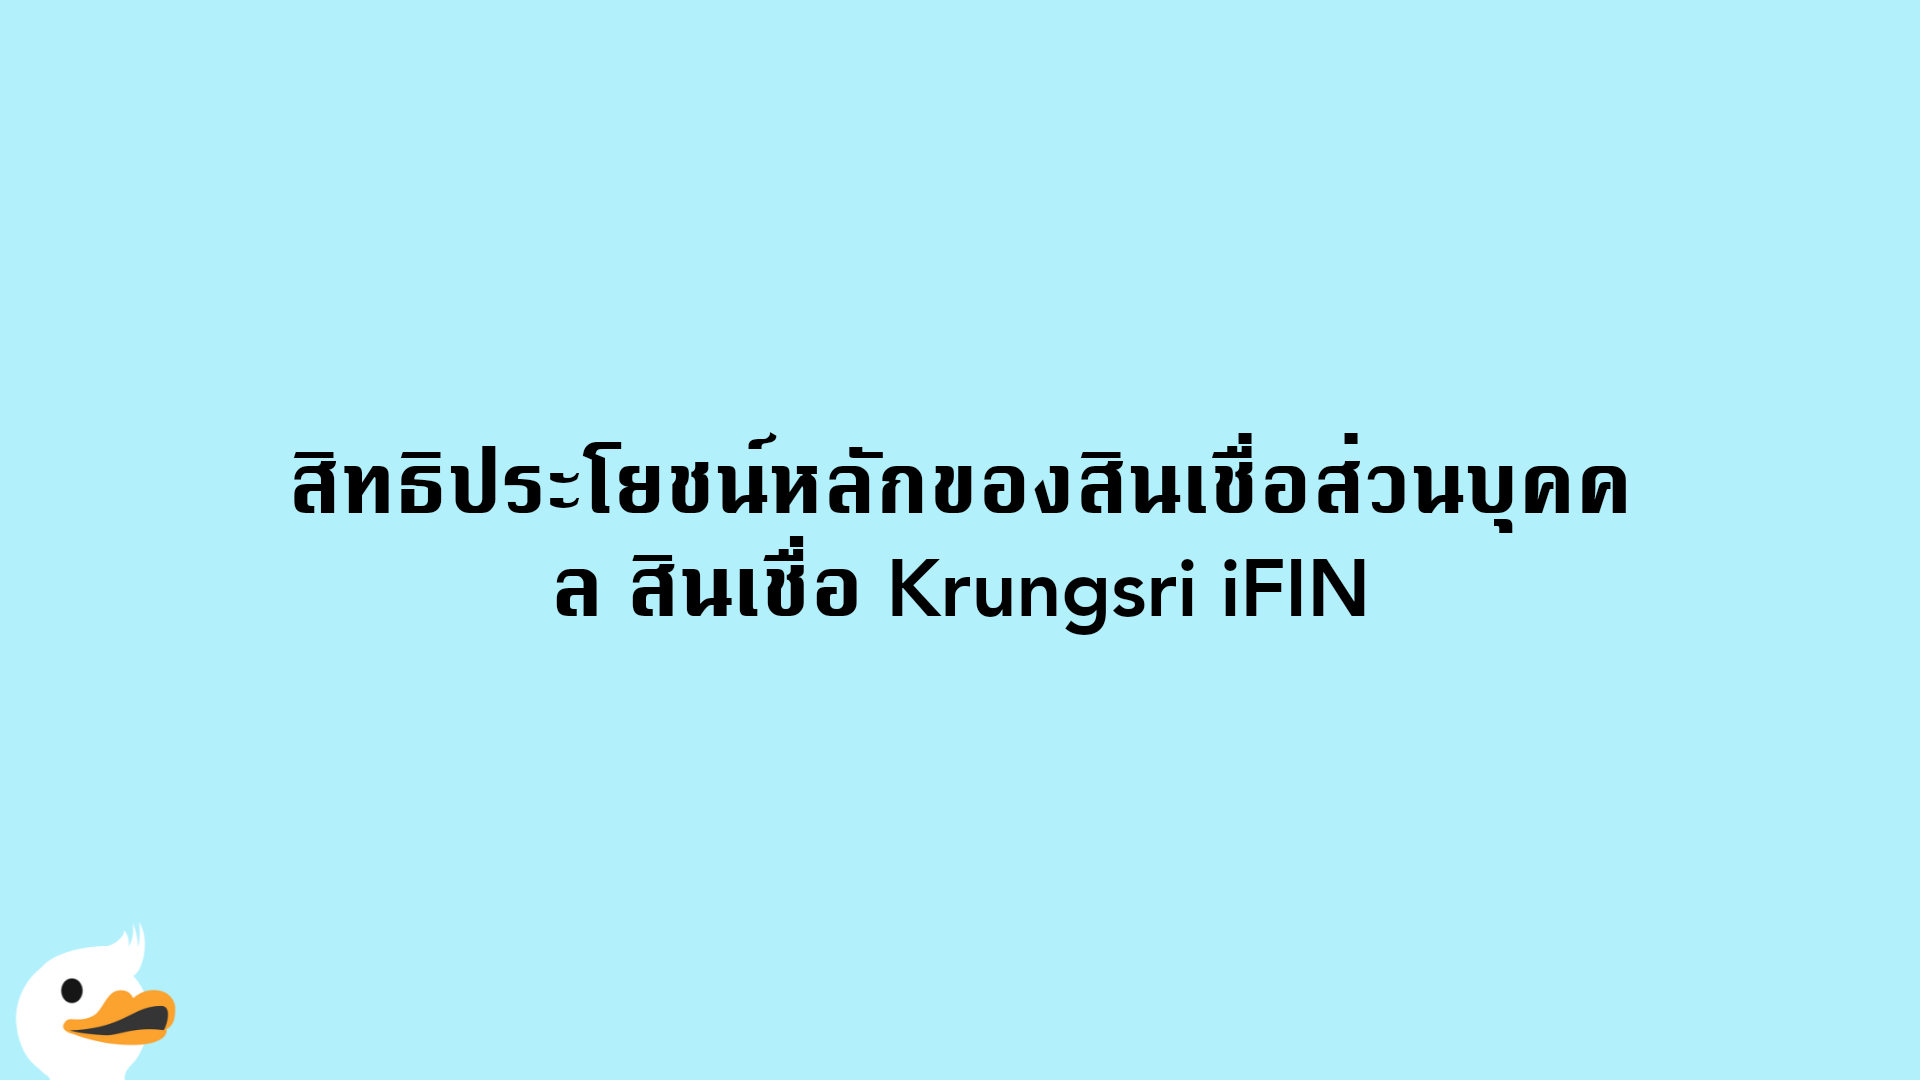 สิทธิประโยชน์หลักของสินเชื่อส่วนบุคคล สินเชื่อ Krungsri iFIN